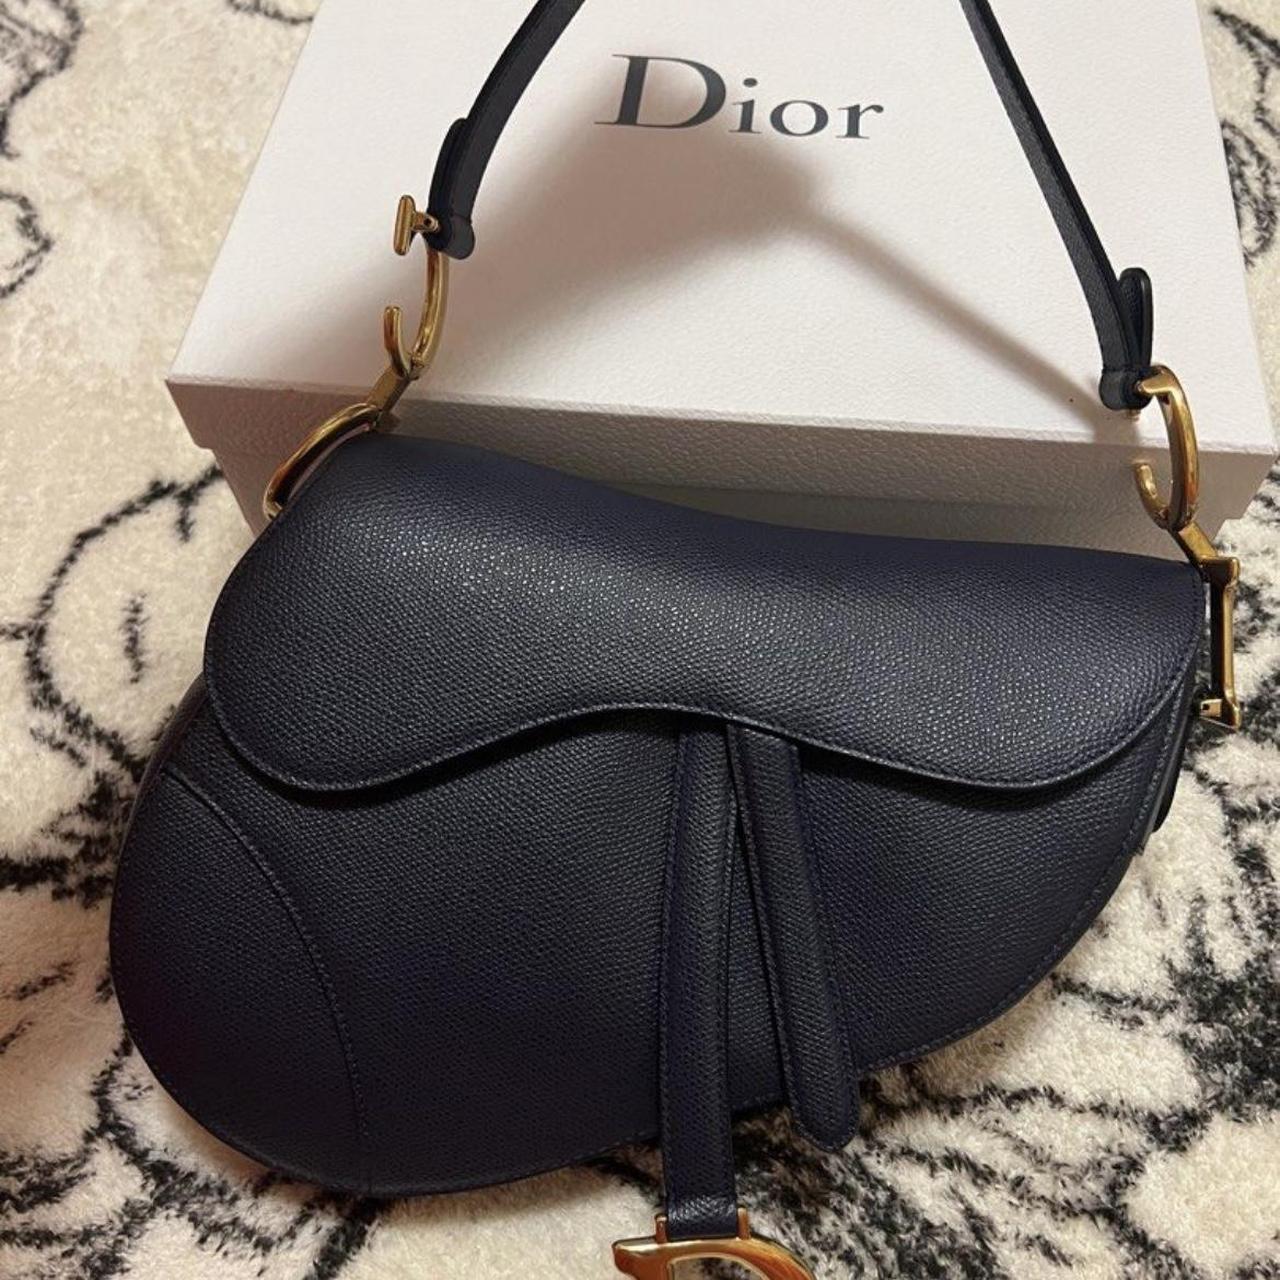 Dior Saddle Bag - Depop